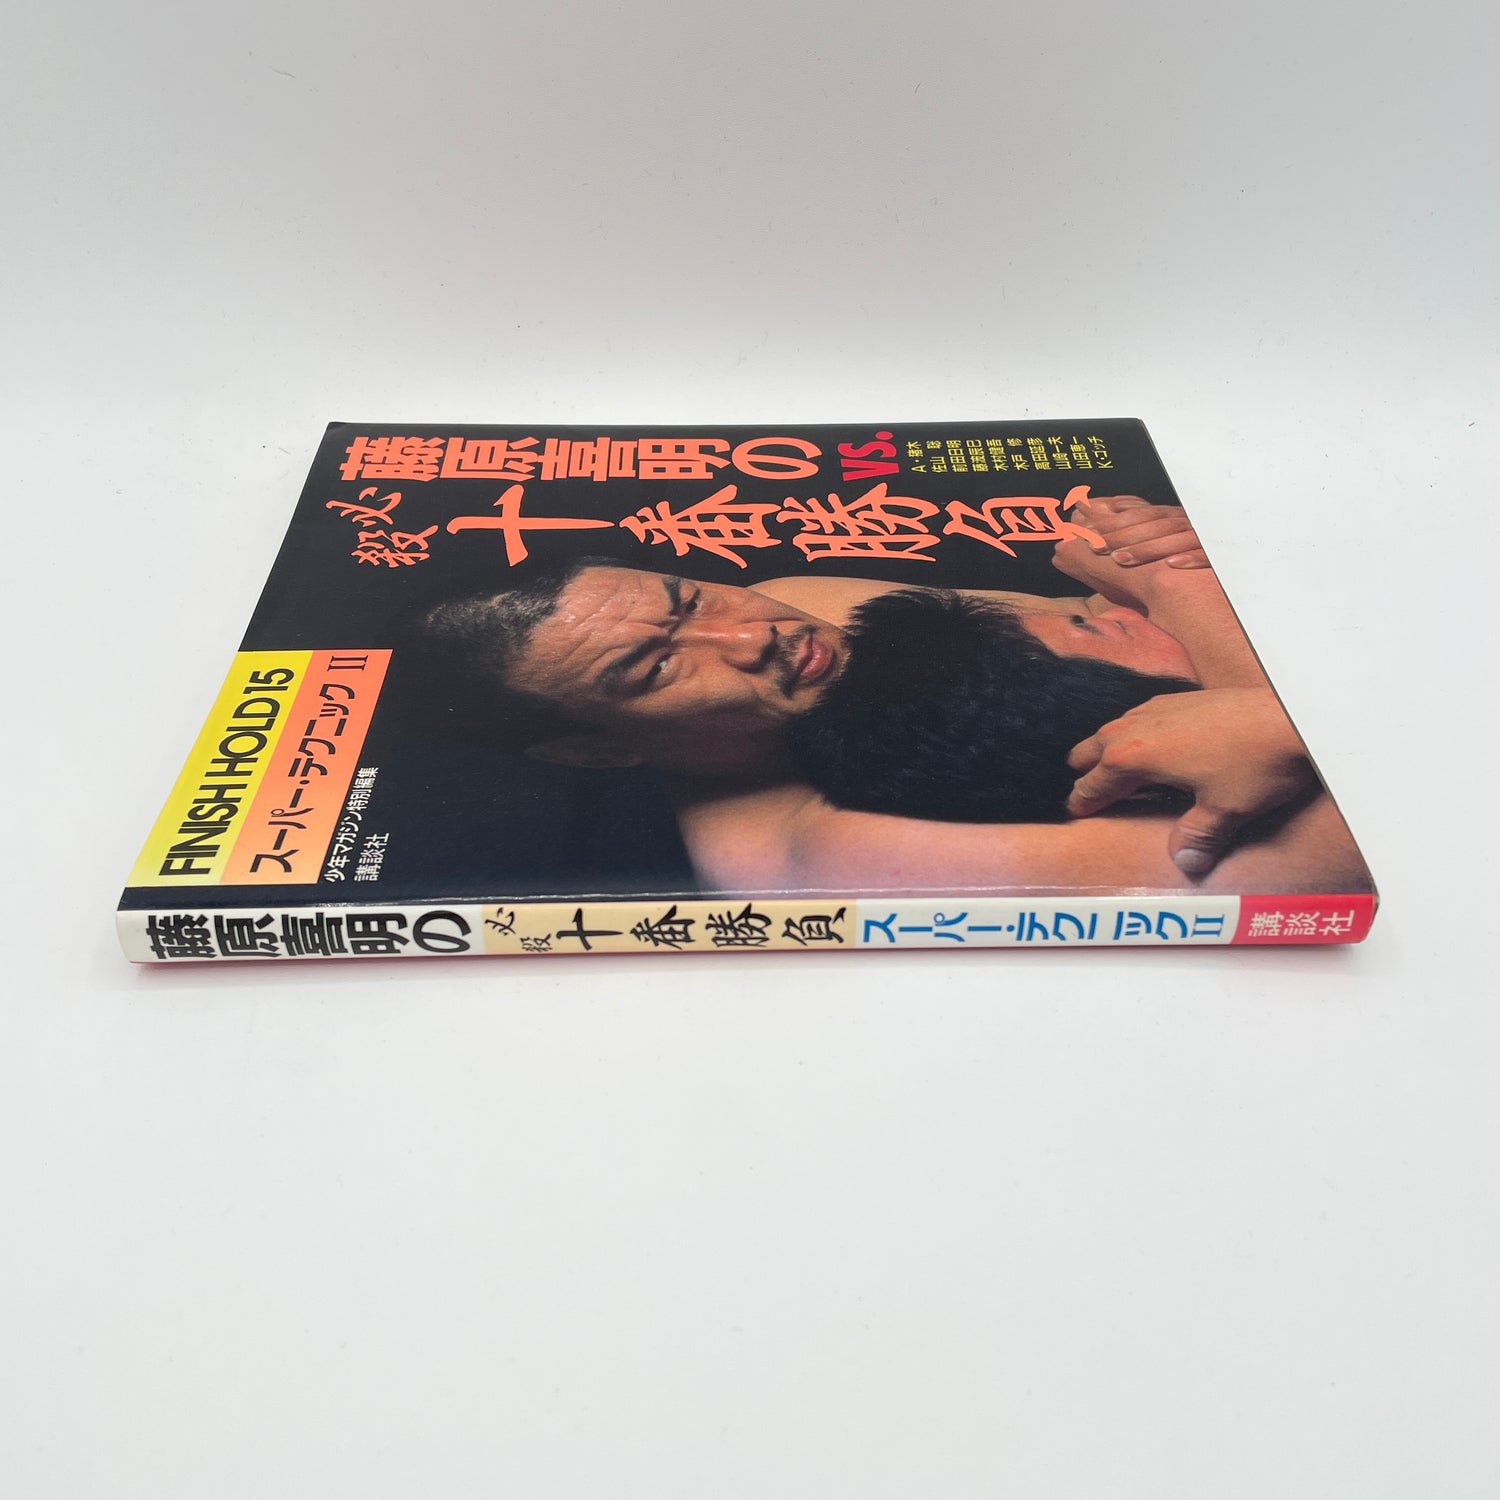 スーパーテクニックブック 2 藤原喜明 (中古)